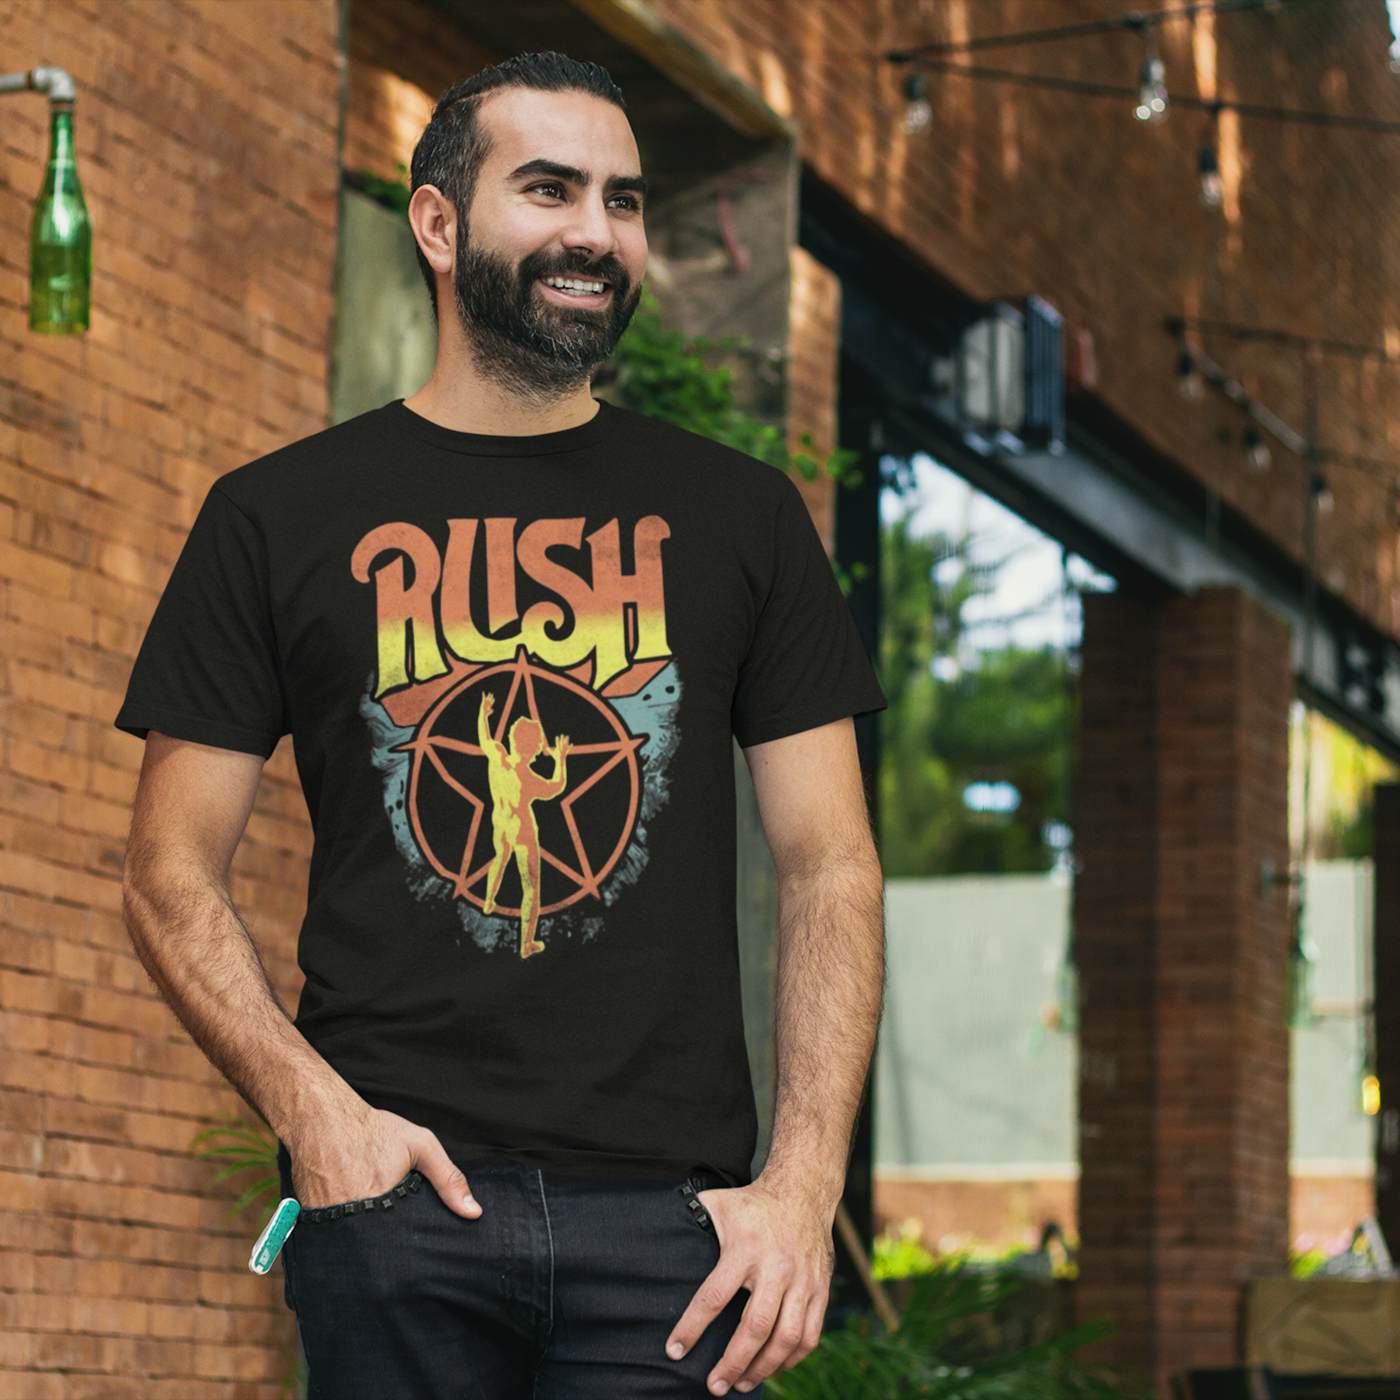 | Starman T-Shirt Rush 2112 T-Shirt Rush